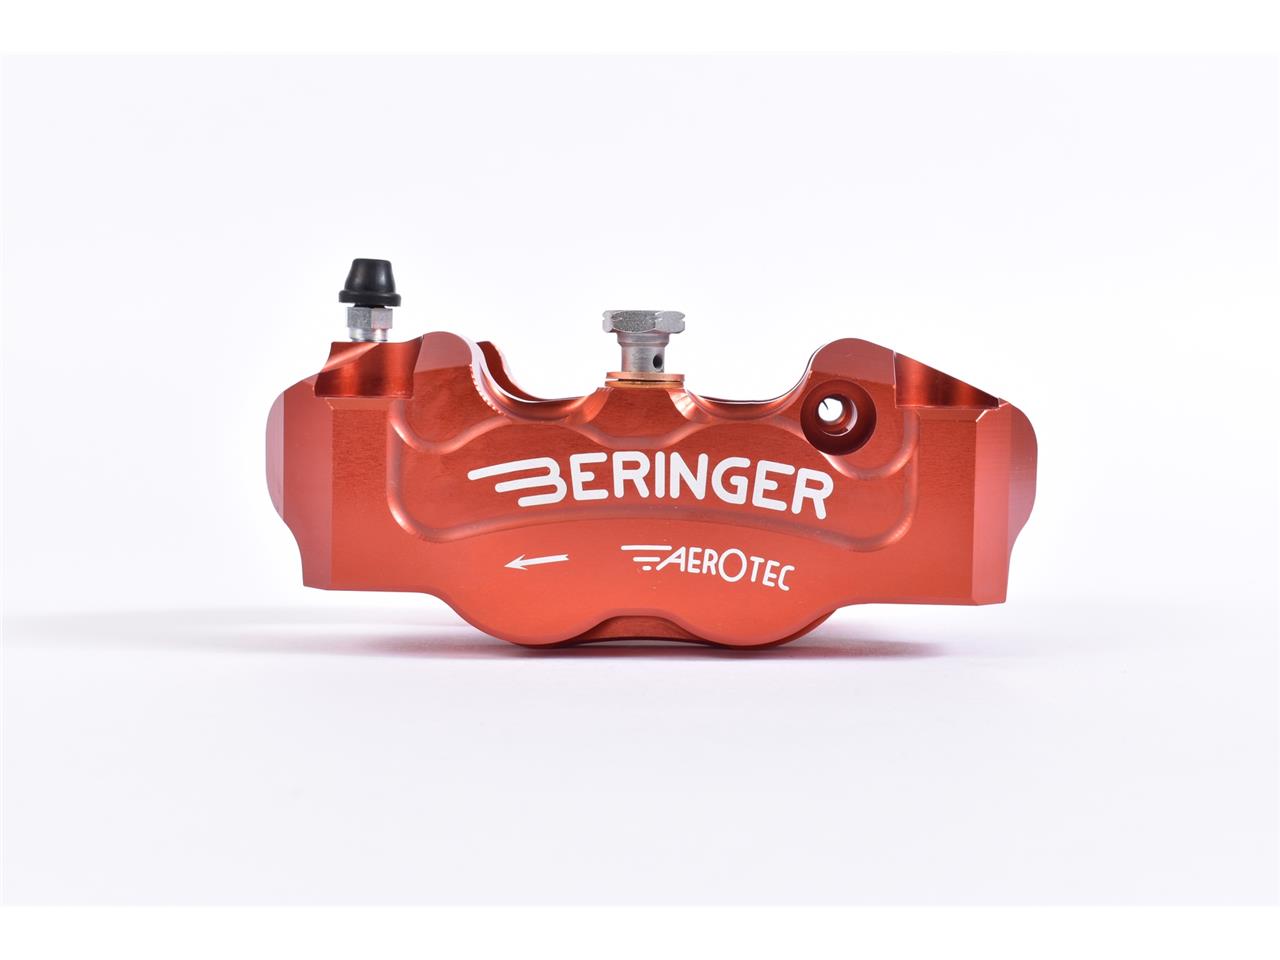 Étrier de frein radial gauche Beringer Aerotec®, 4 pistons Ø32mm, entraxe 108mm, couleur rouge